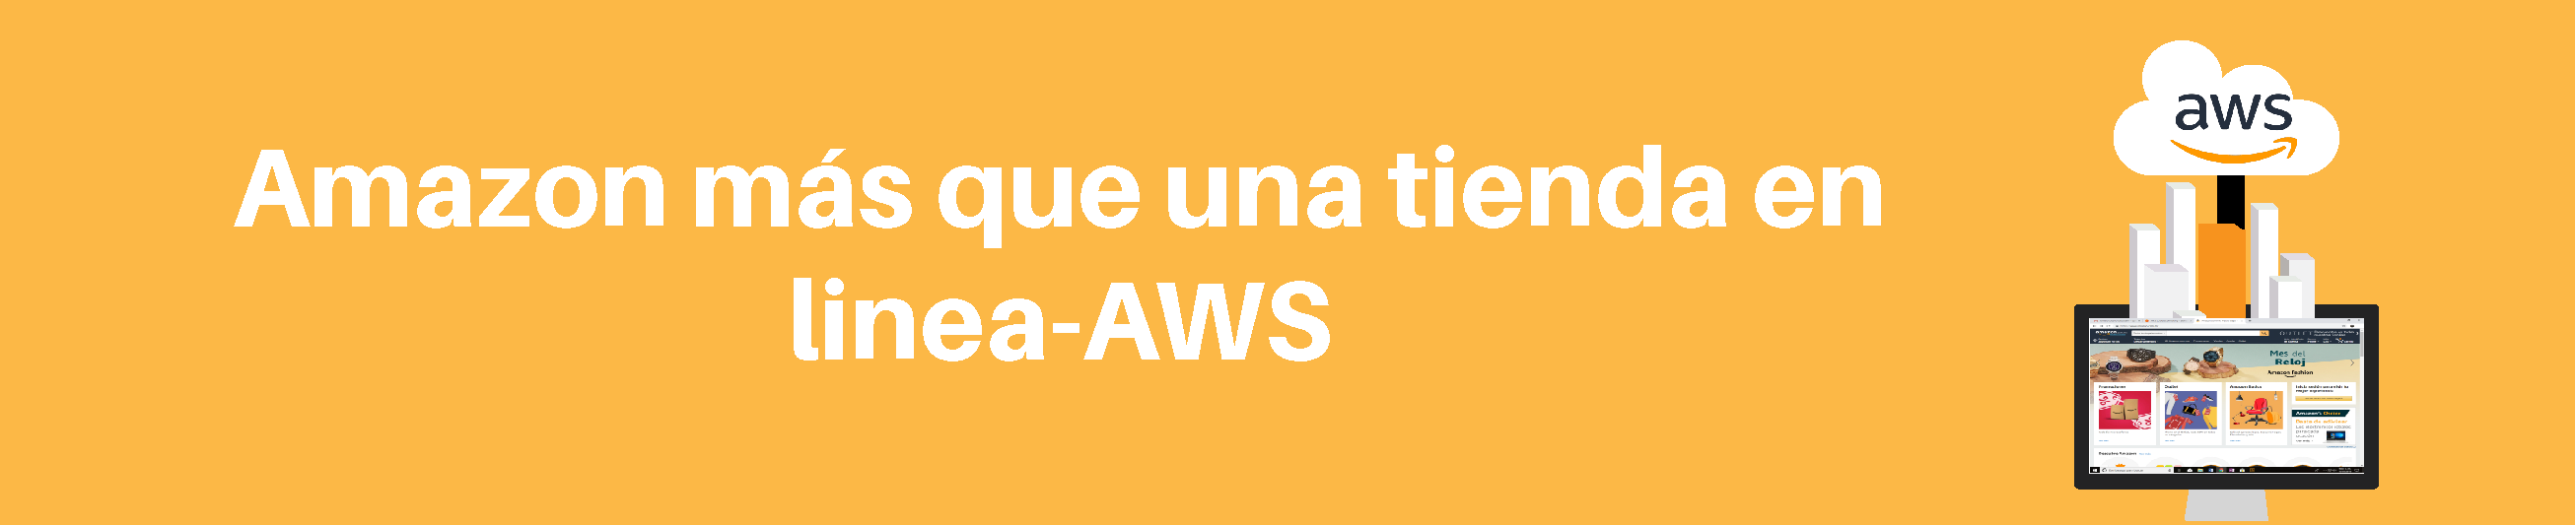 Amazon más que una tienda en línea-AWS